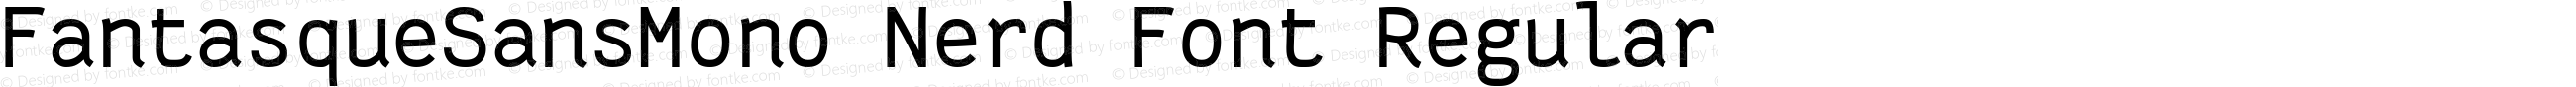 Fantasque Sans Mono Regular Nerd Font Plus Font Awesome Plus Octicons